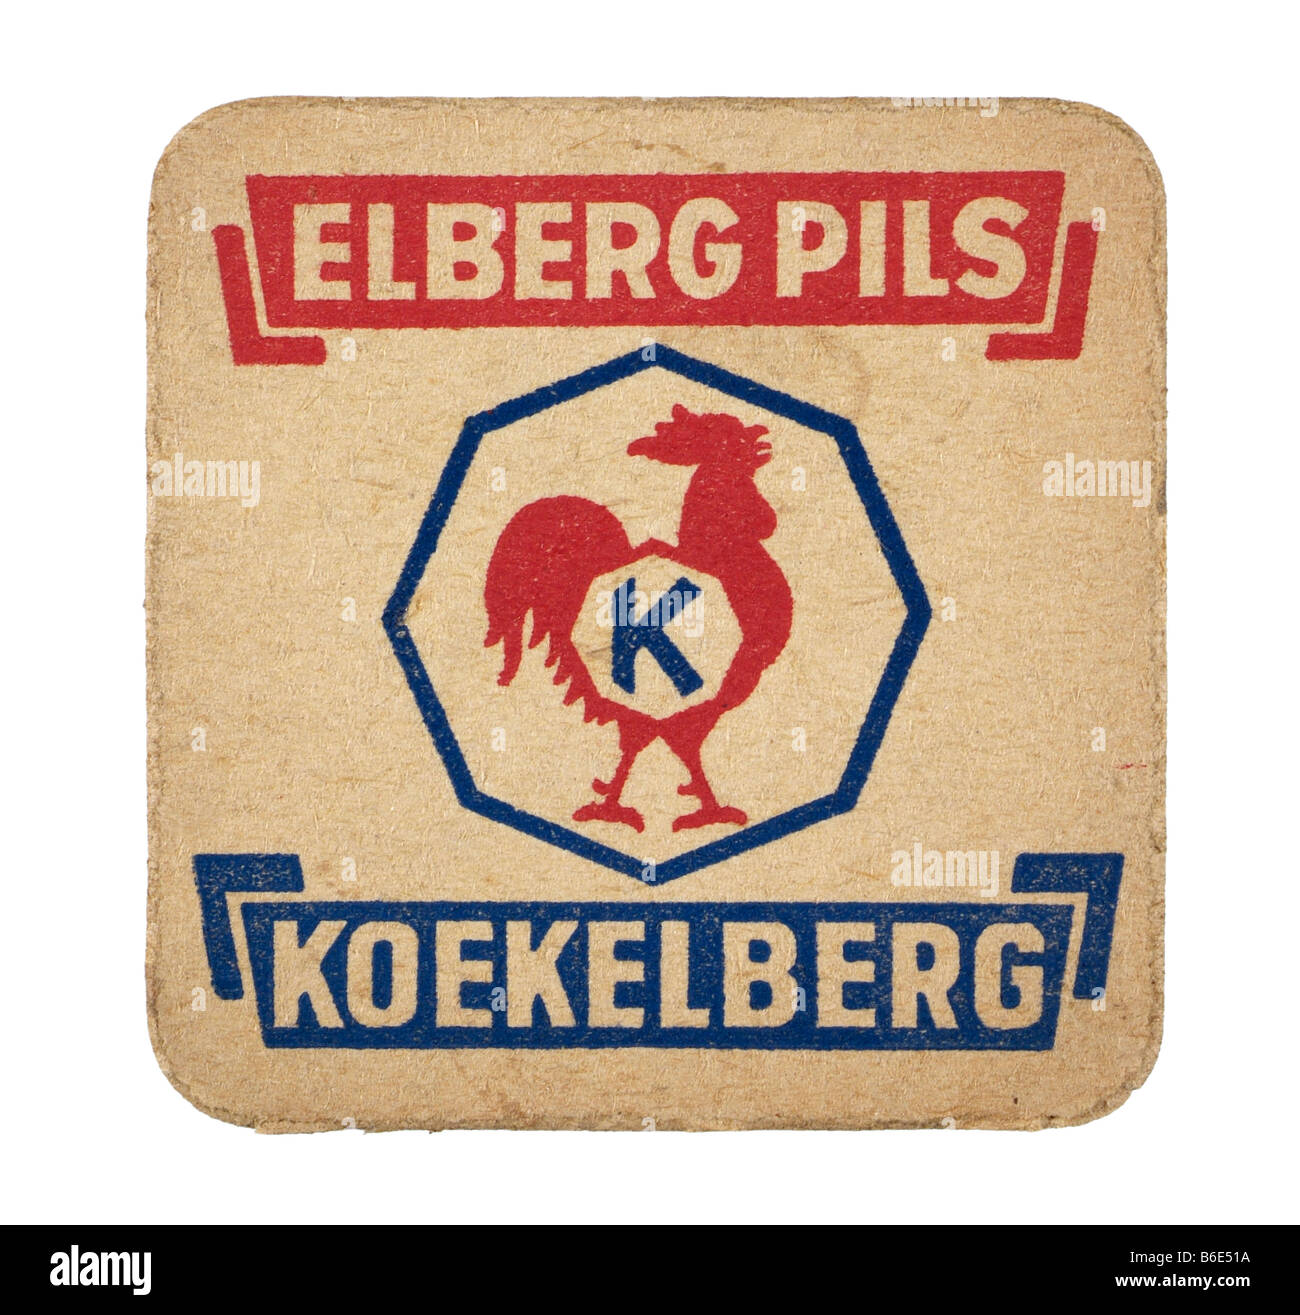 Elberg Pils koekelberg Stockfoto